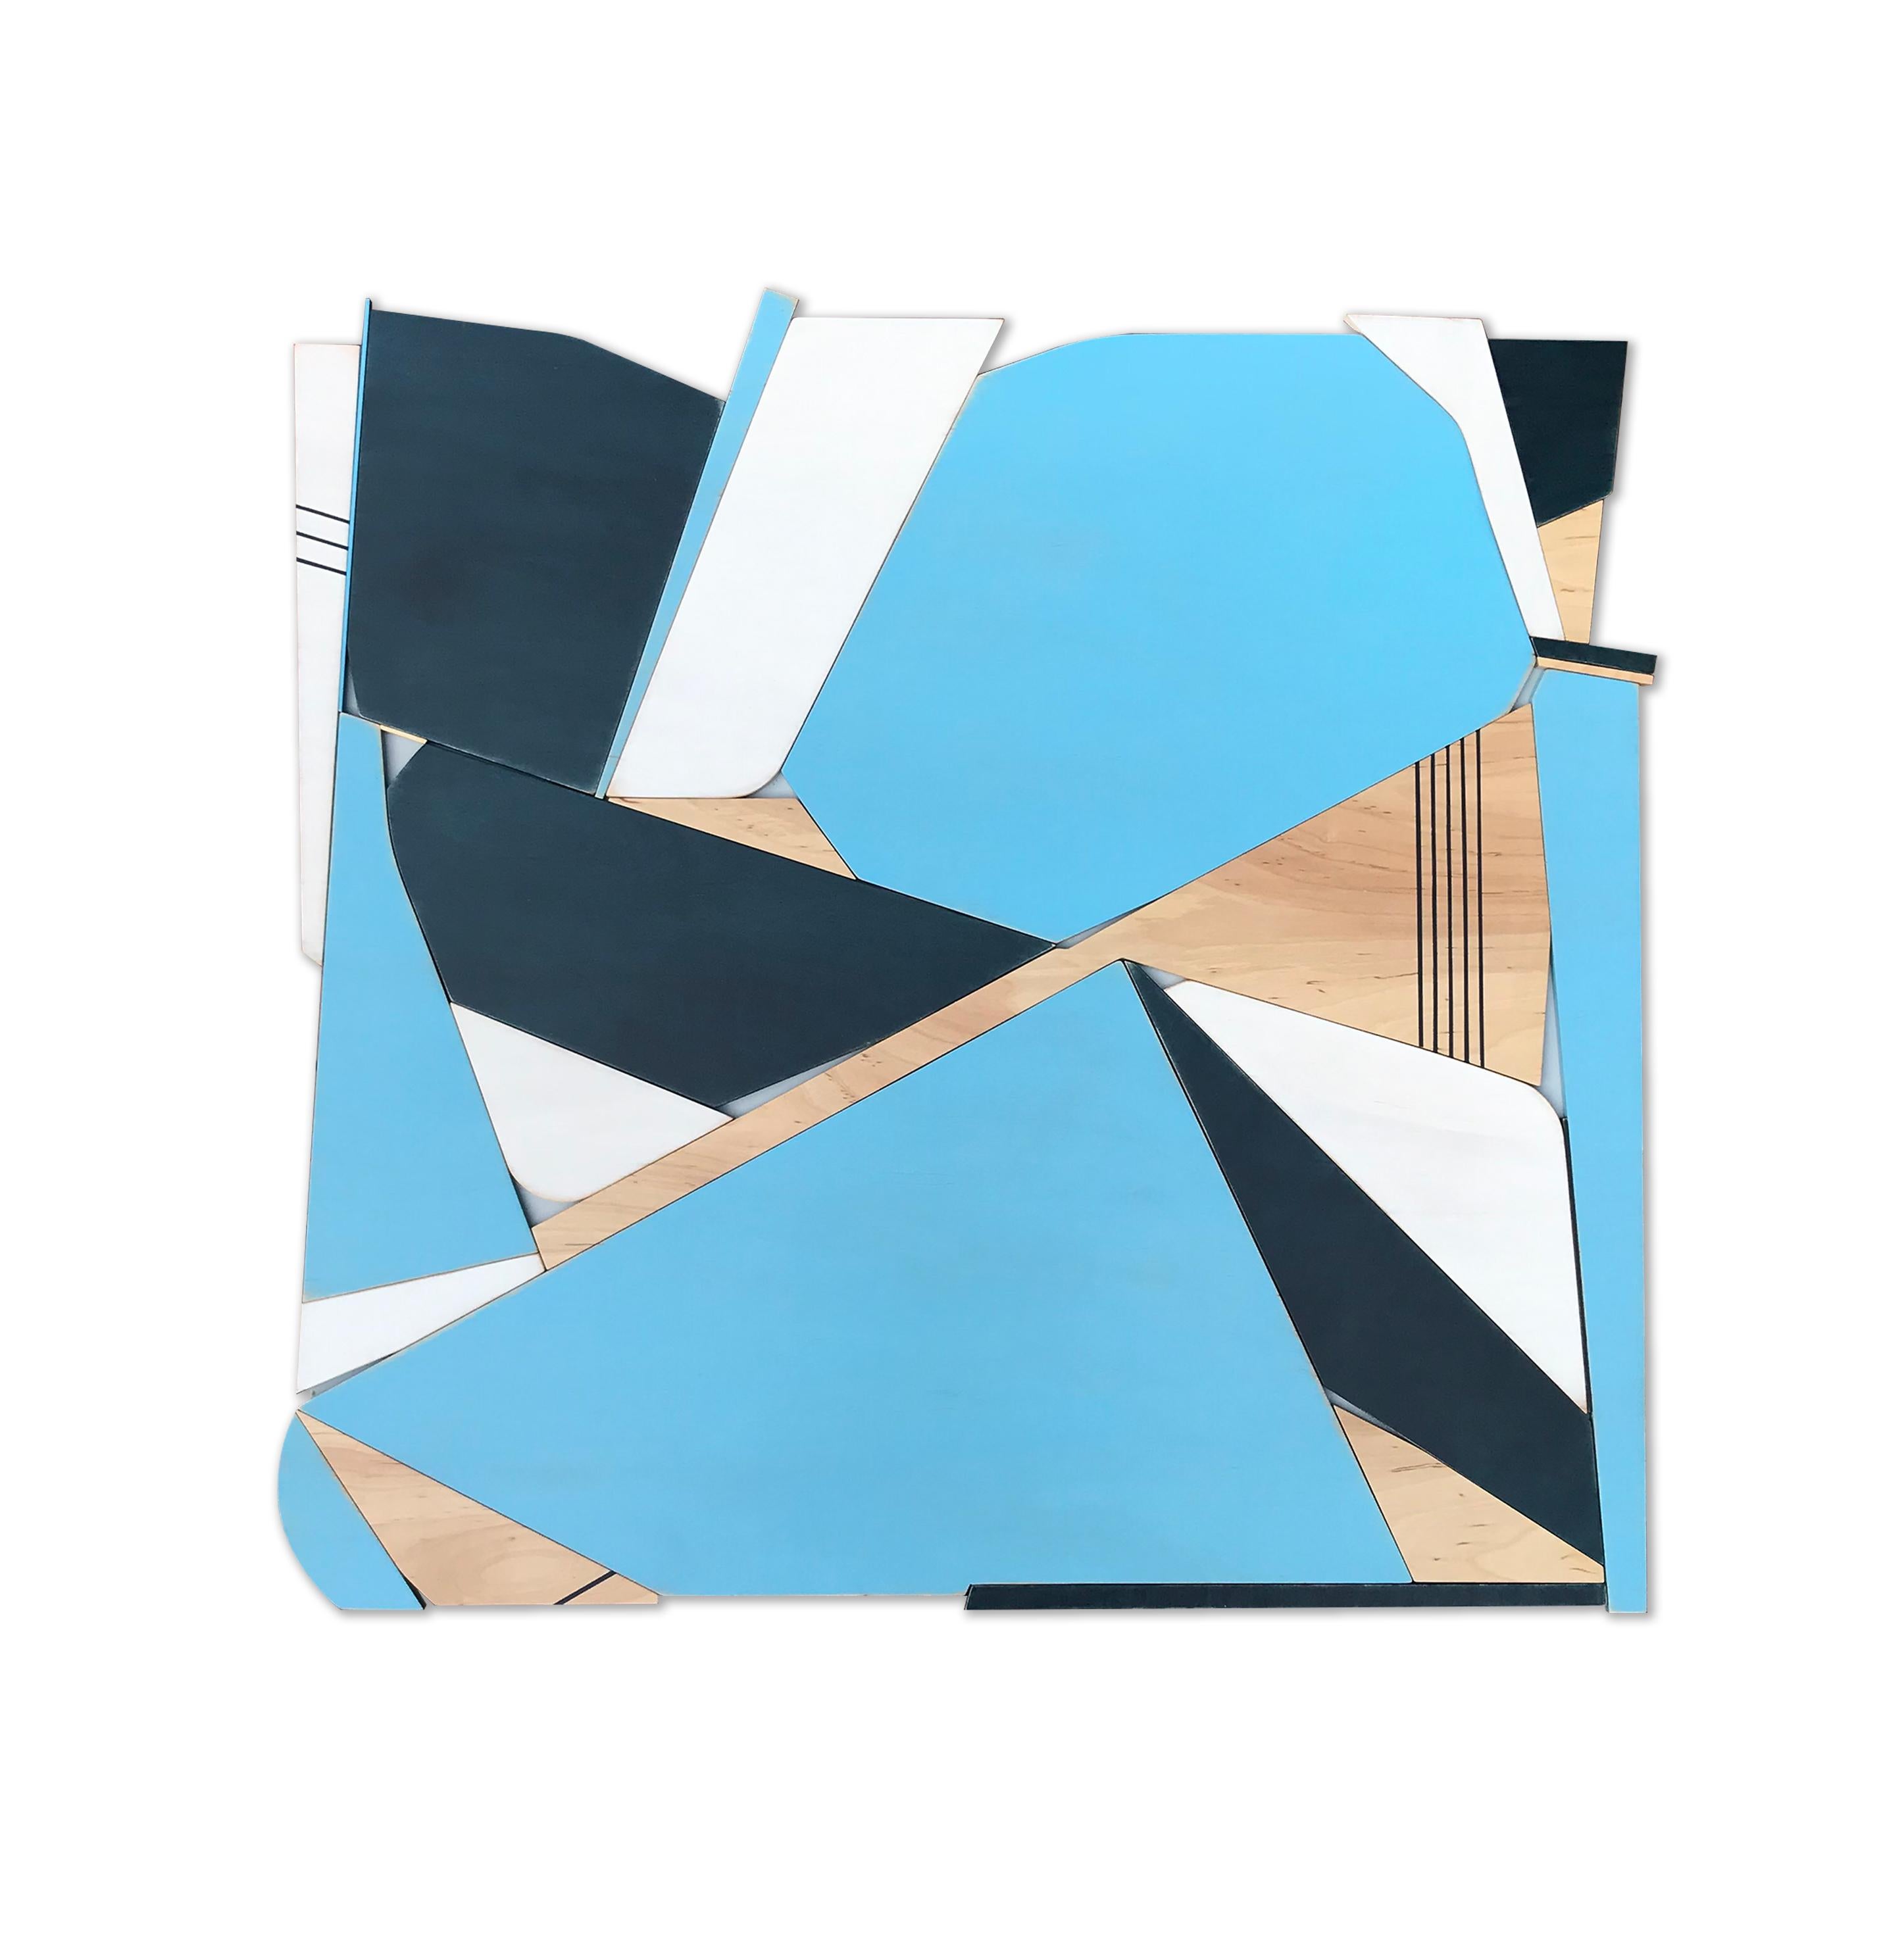 Scott Troxel Abstract Painting - Blue Bird (bermuda blue, navy, modern wall sculpture, abstract geometric art)